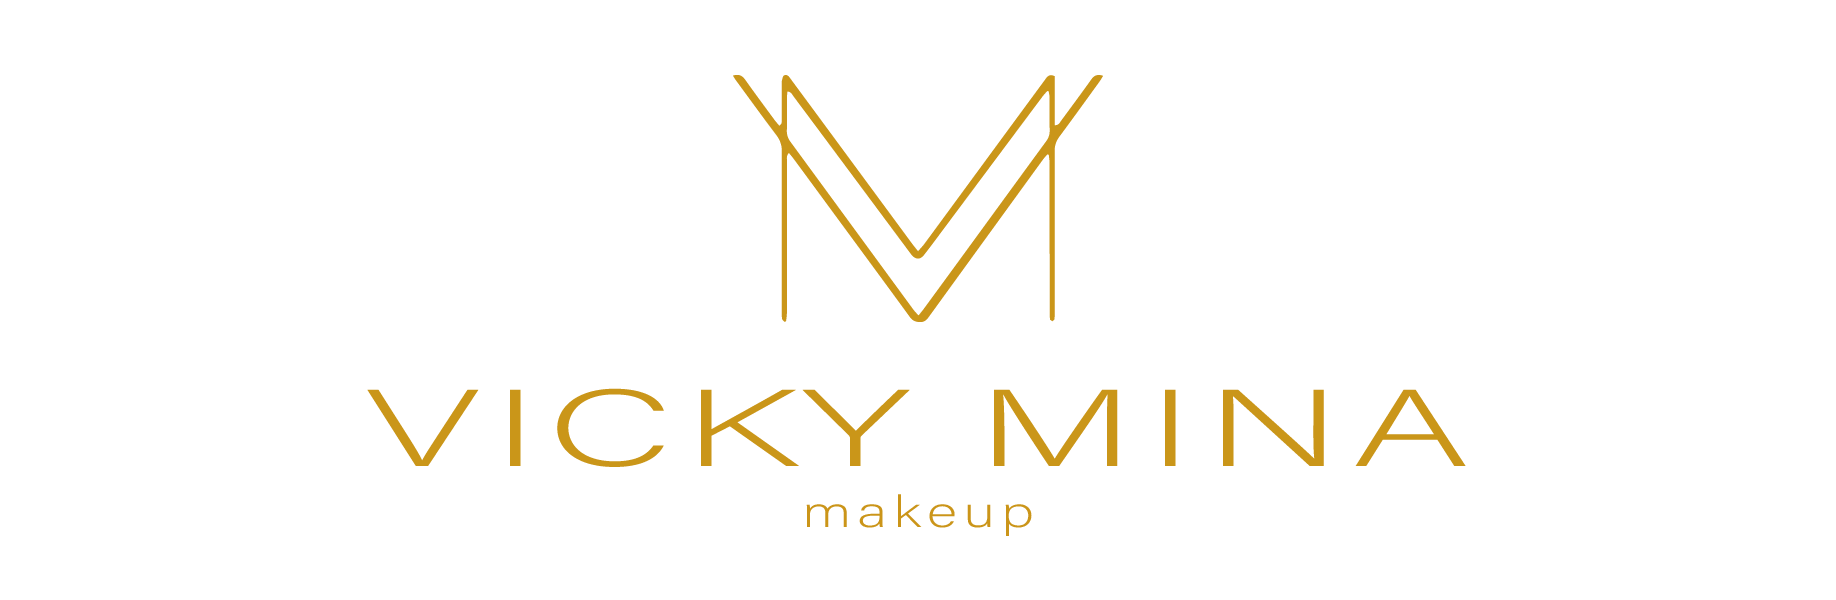 Vicky Mina Makeup